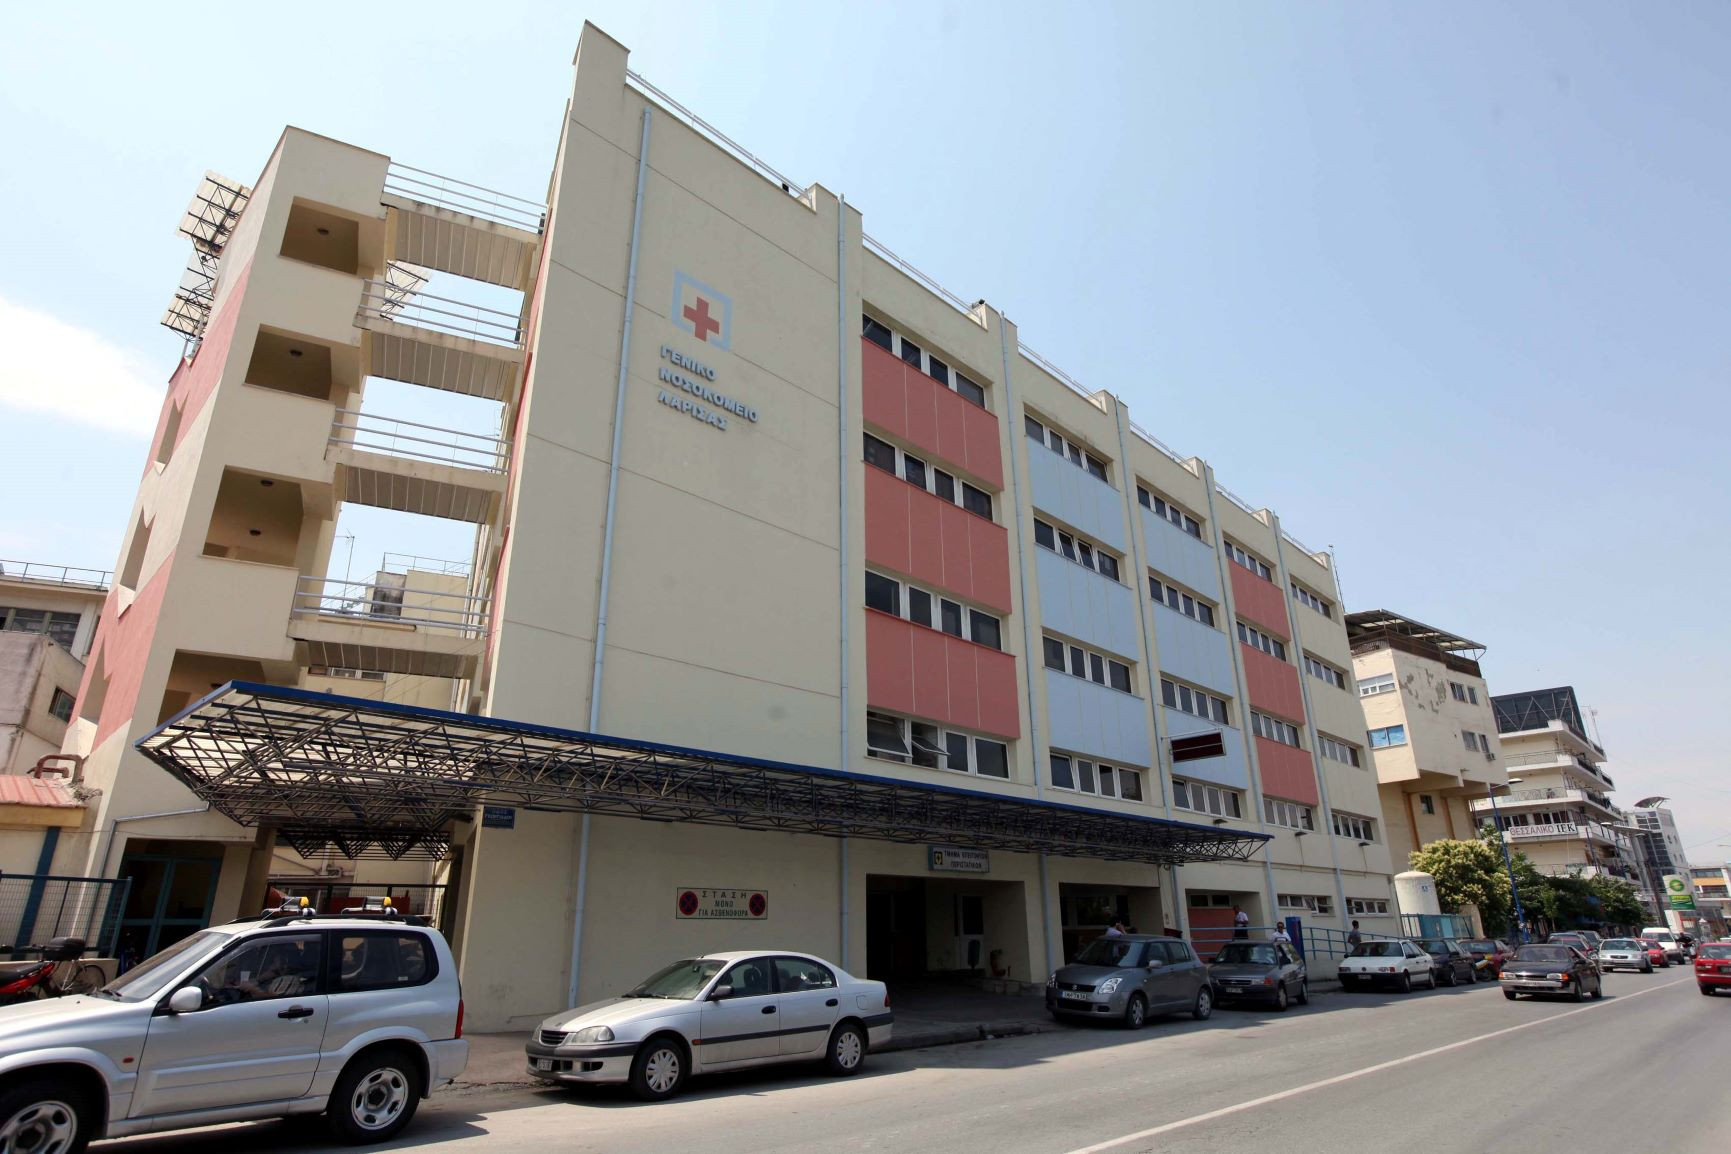 Αποσωληνώθηκε η 27χρονη γιατρός στο νοσοκομείο Λάρισας